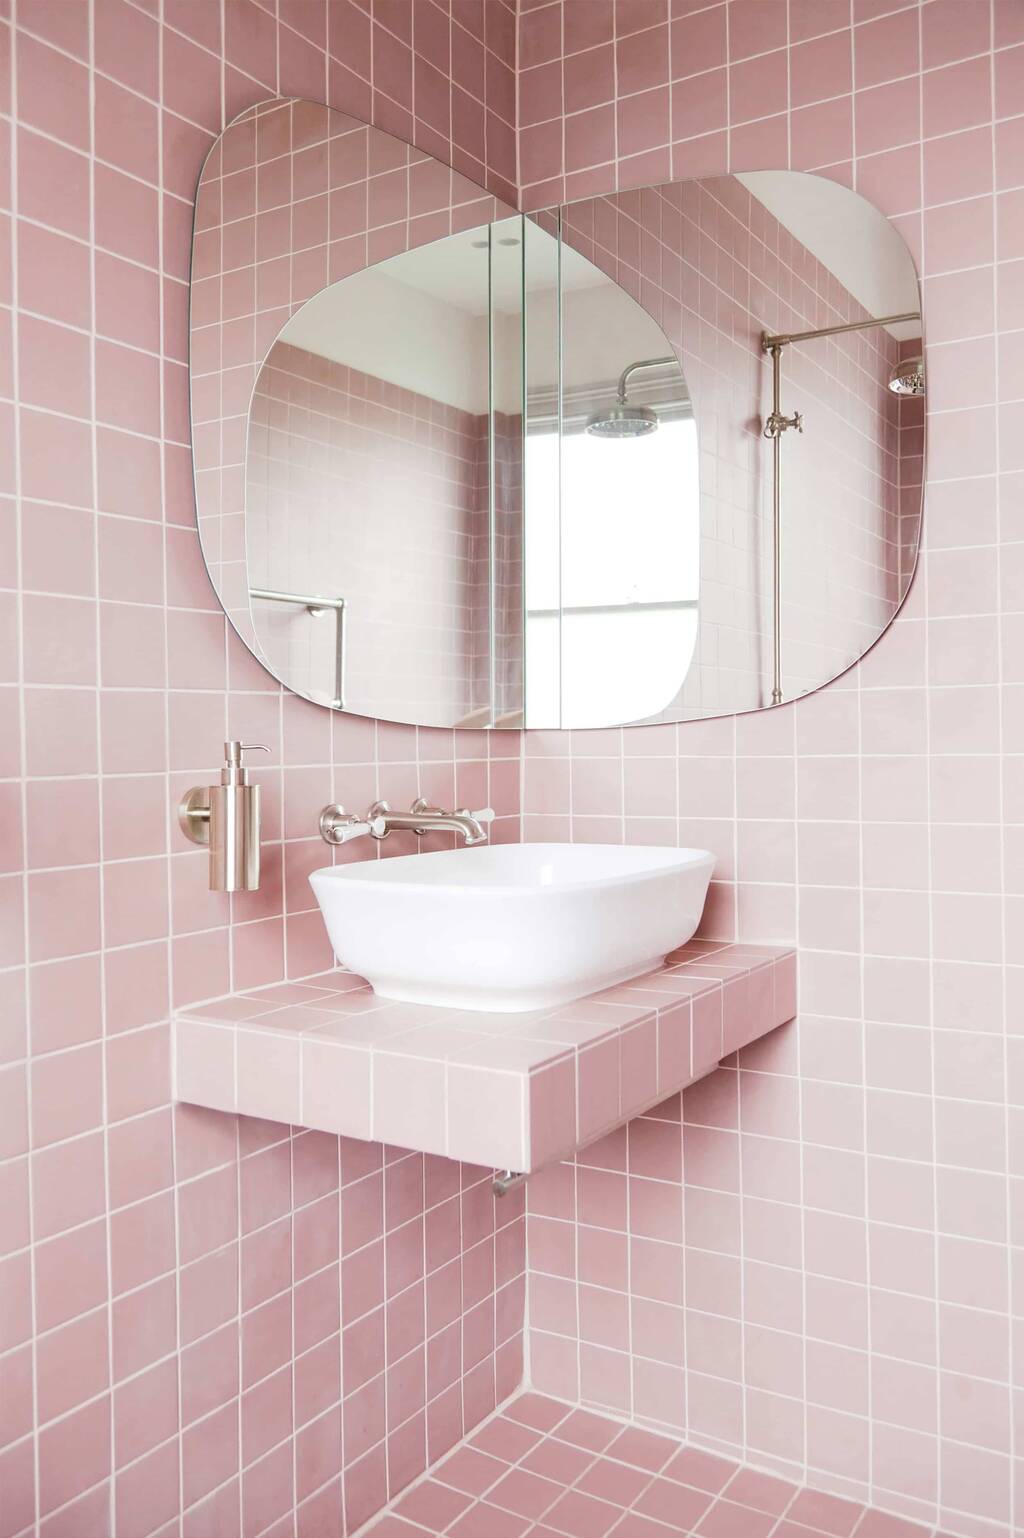 Bathroom Mirror Ideas 17 Reflective Interior Designs - Bathroom Framed Mirror Ideas